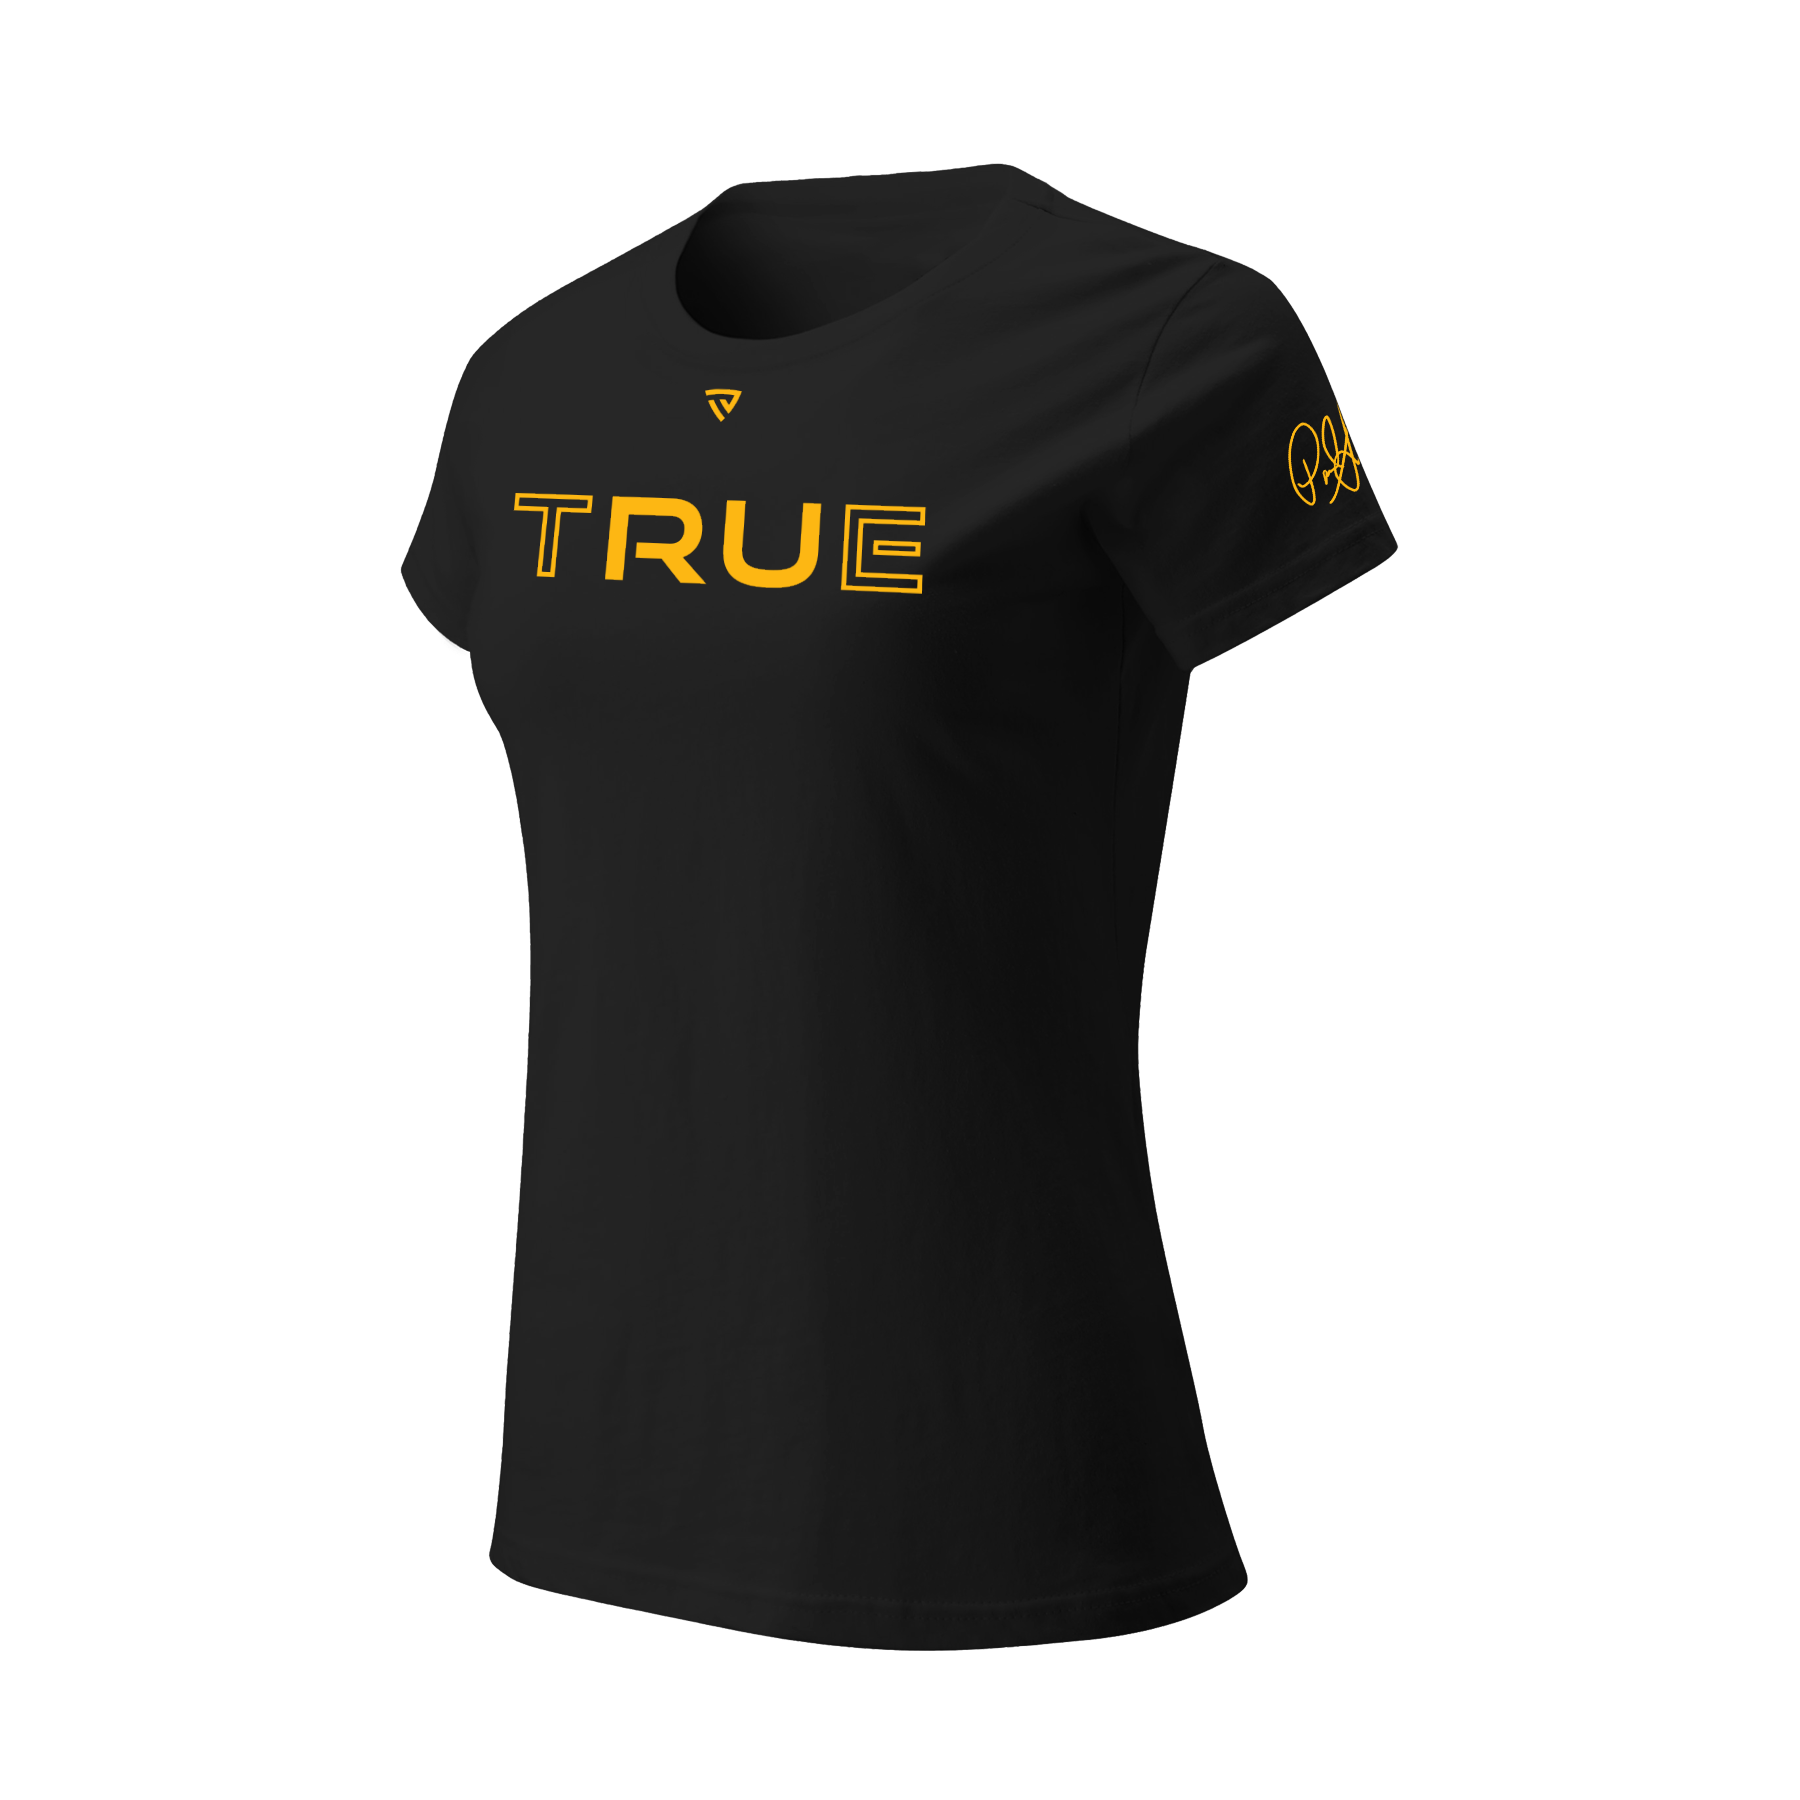 Women's RU True X Paul Skenes Signature Series Black Tee